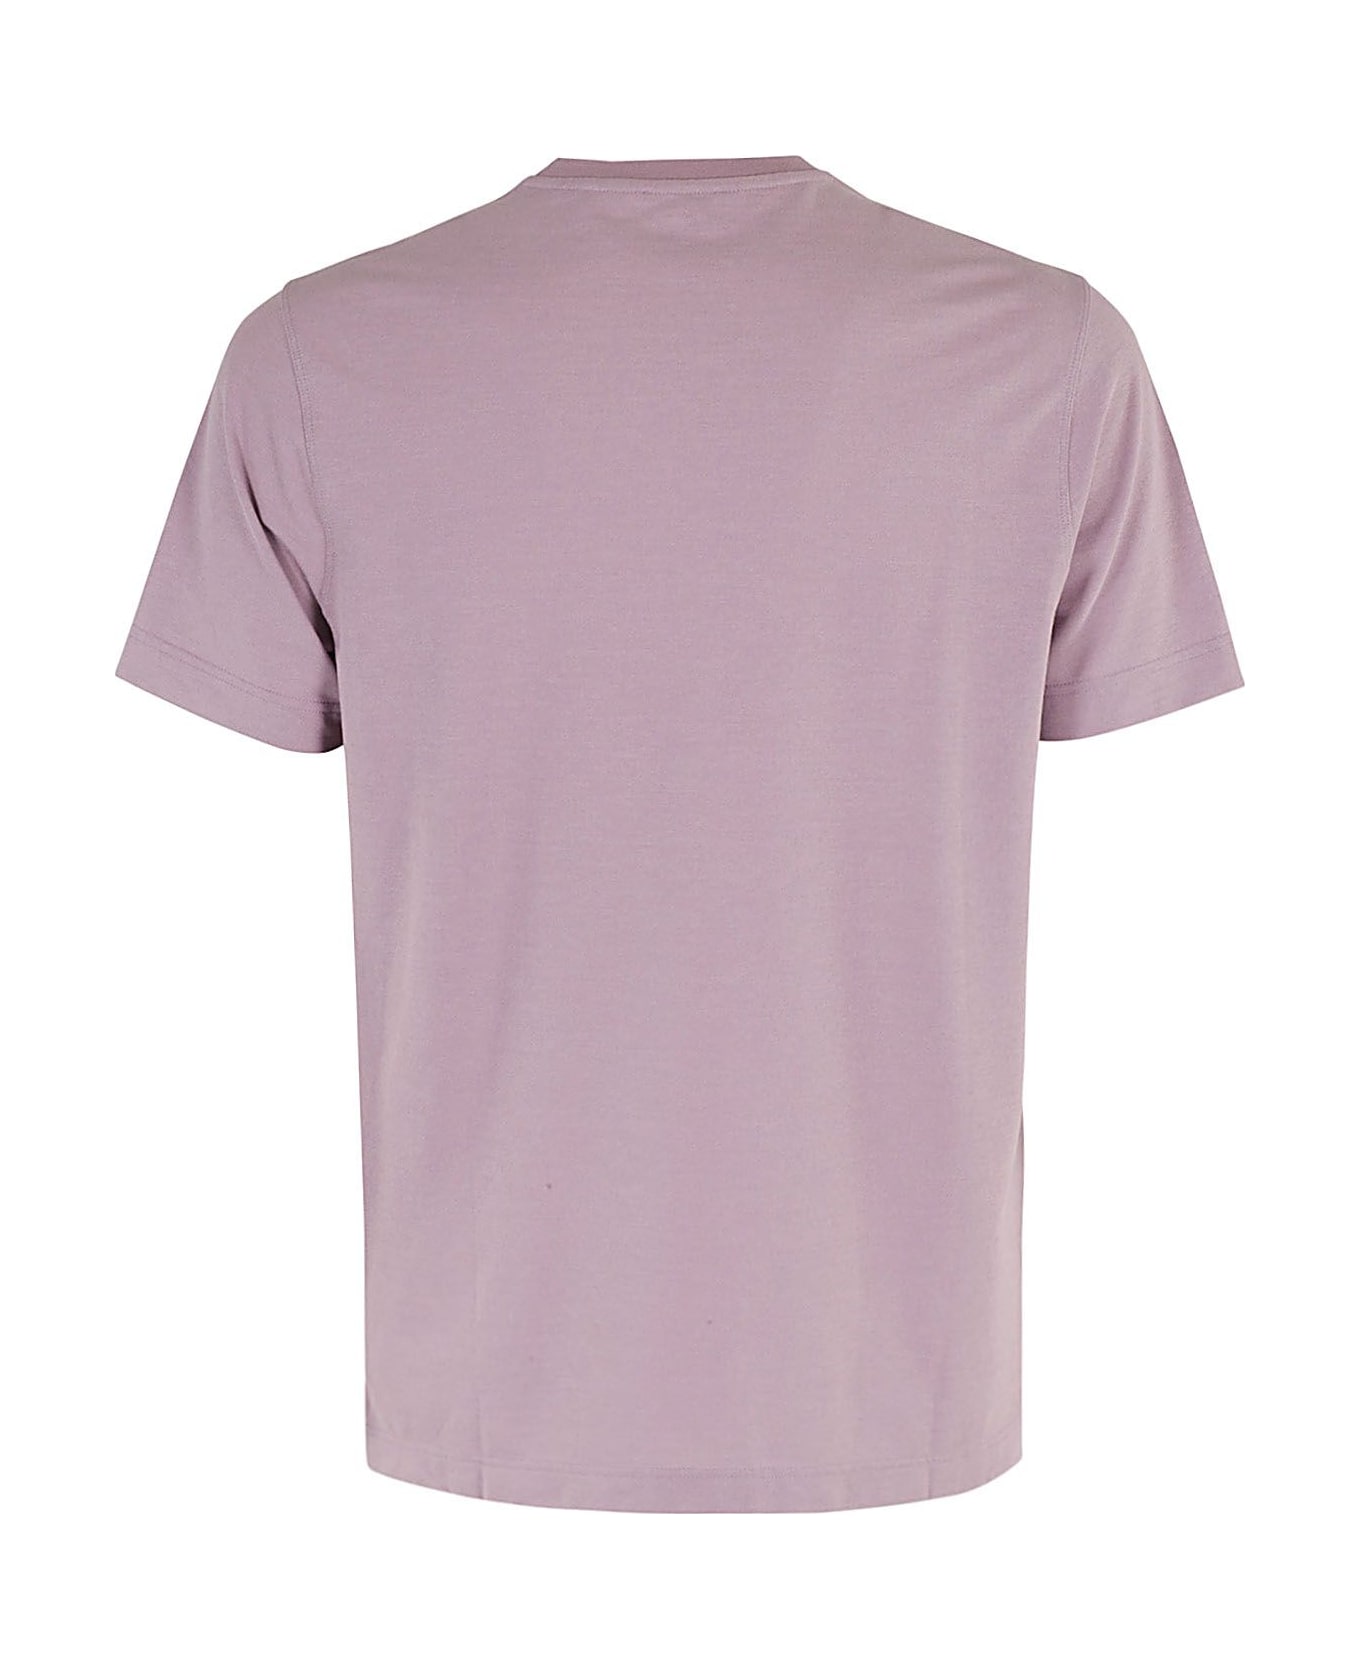 Zanone Tshirt Ice Cotton - Lavender